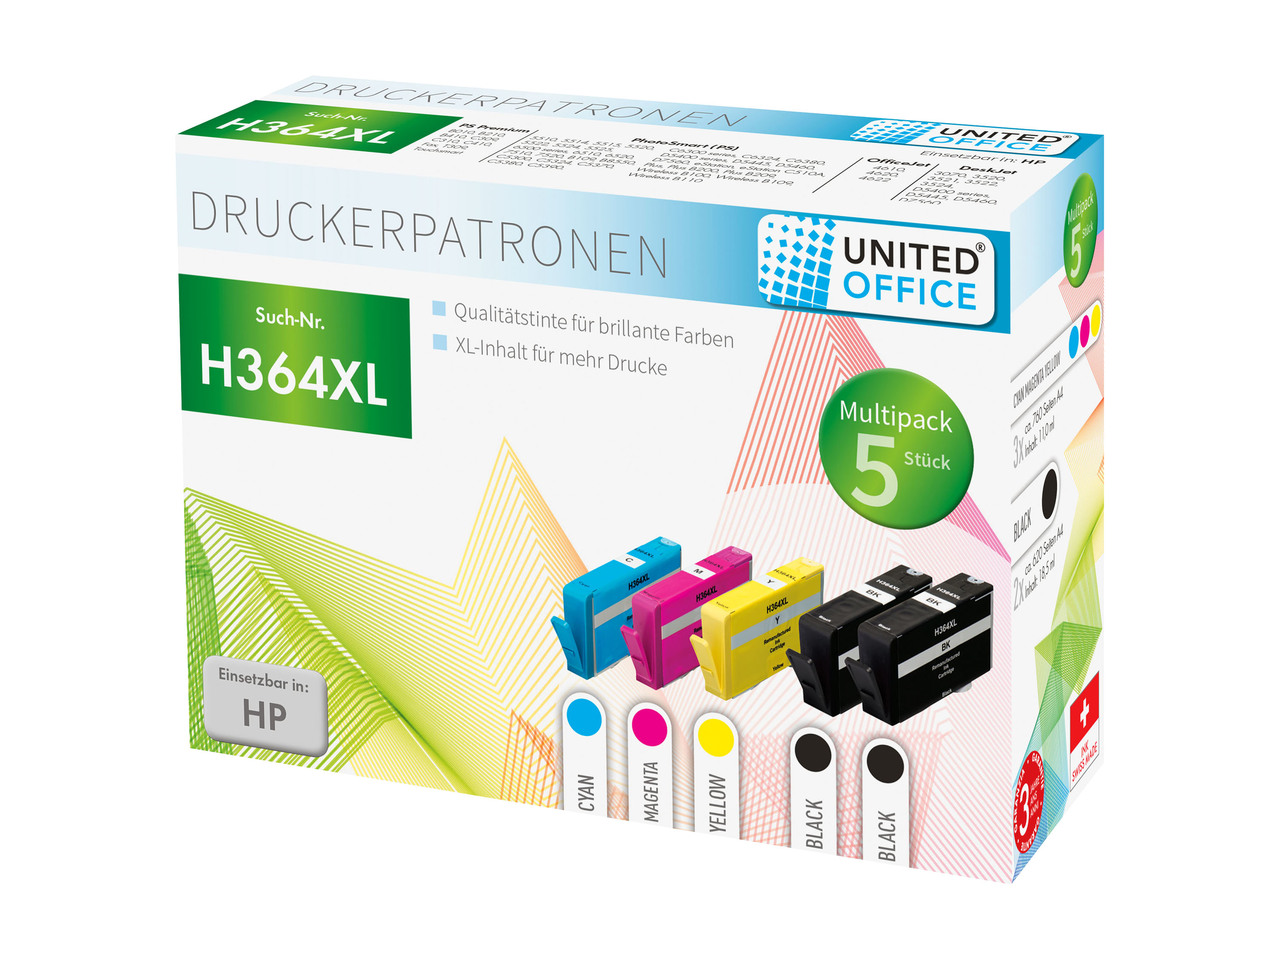 Multipack Cartridges for HP Printers